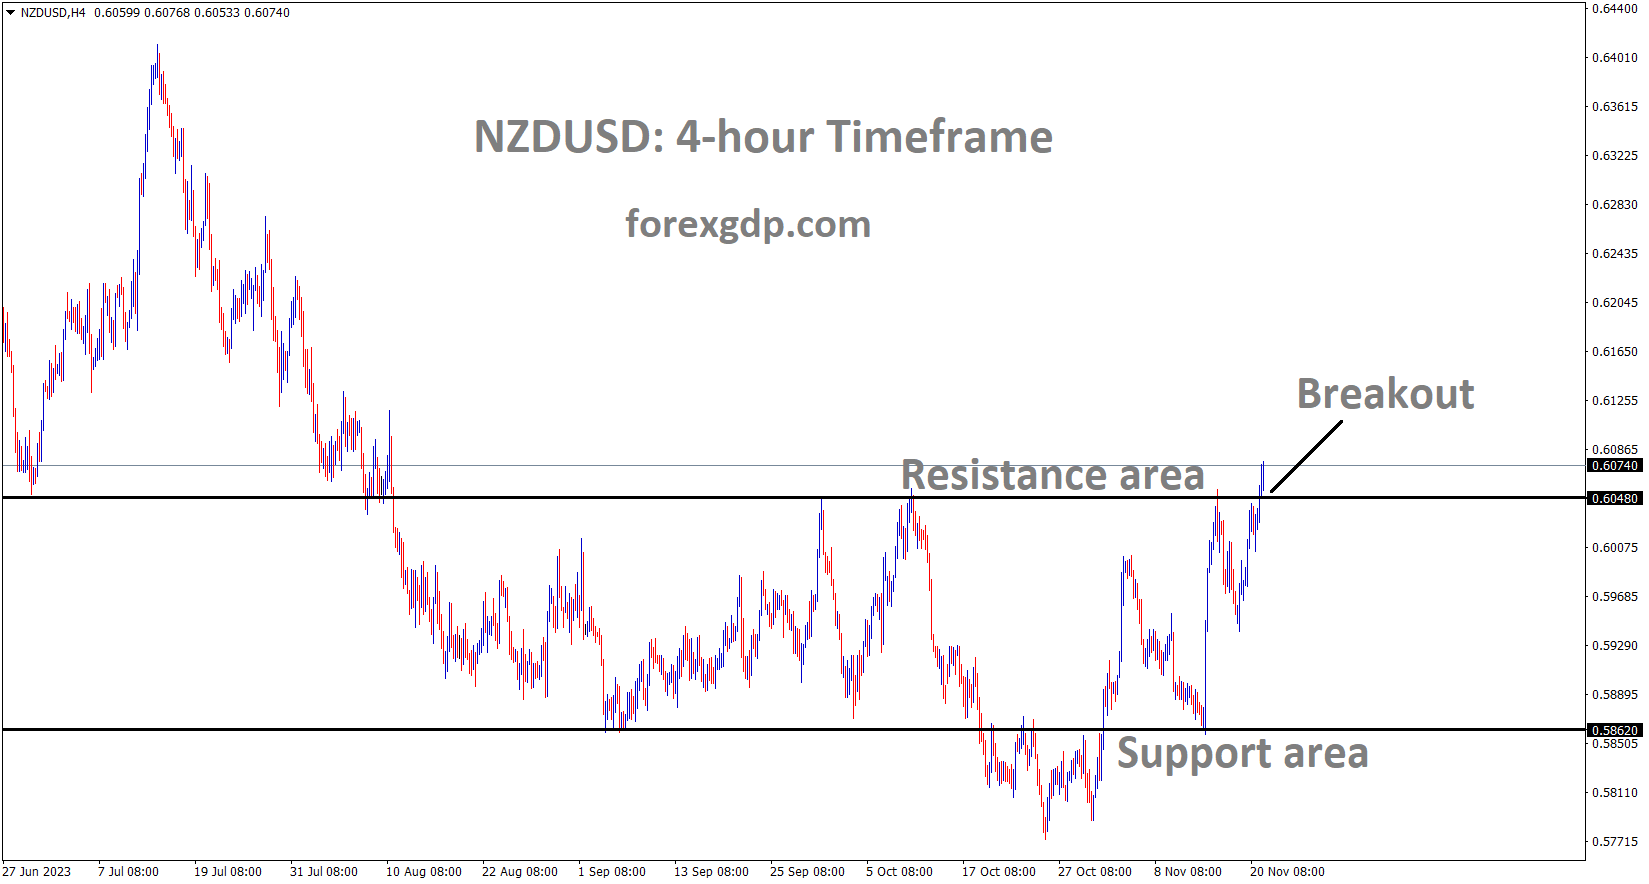 NZDUSD has broken the Box pattern in upside